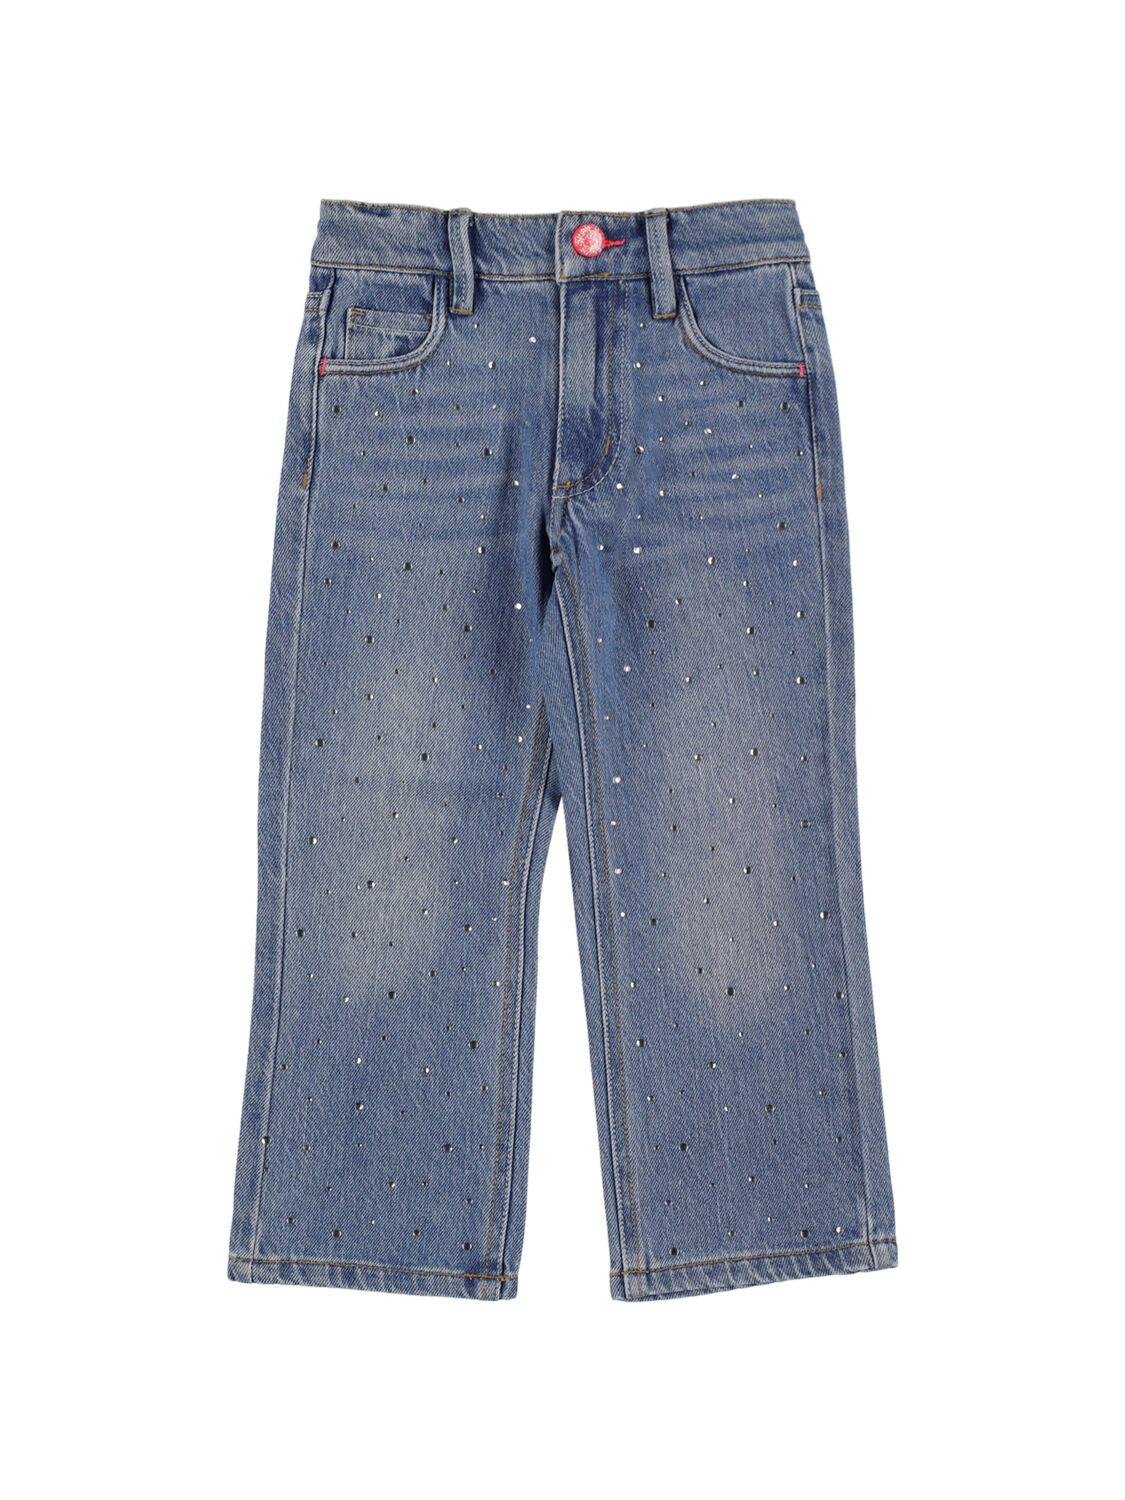 Denim Jeans W/studs by BILLIEBLUSH